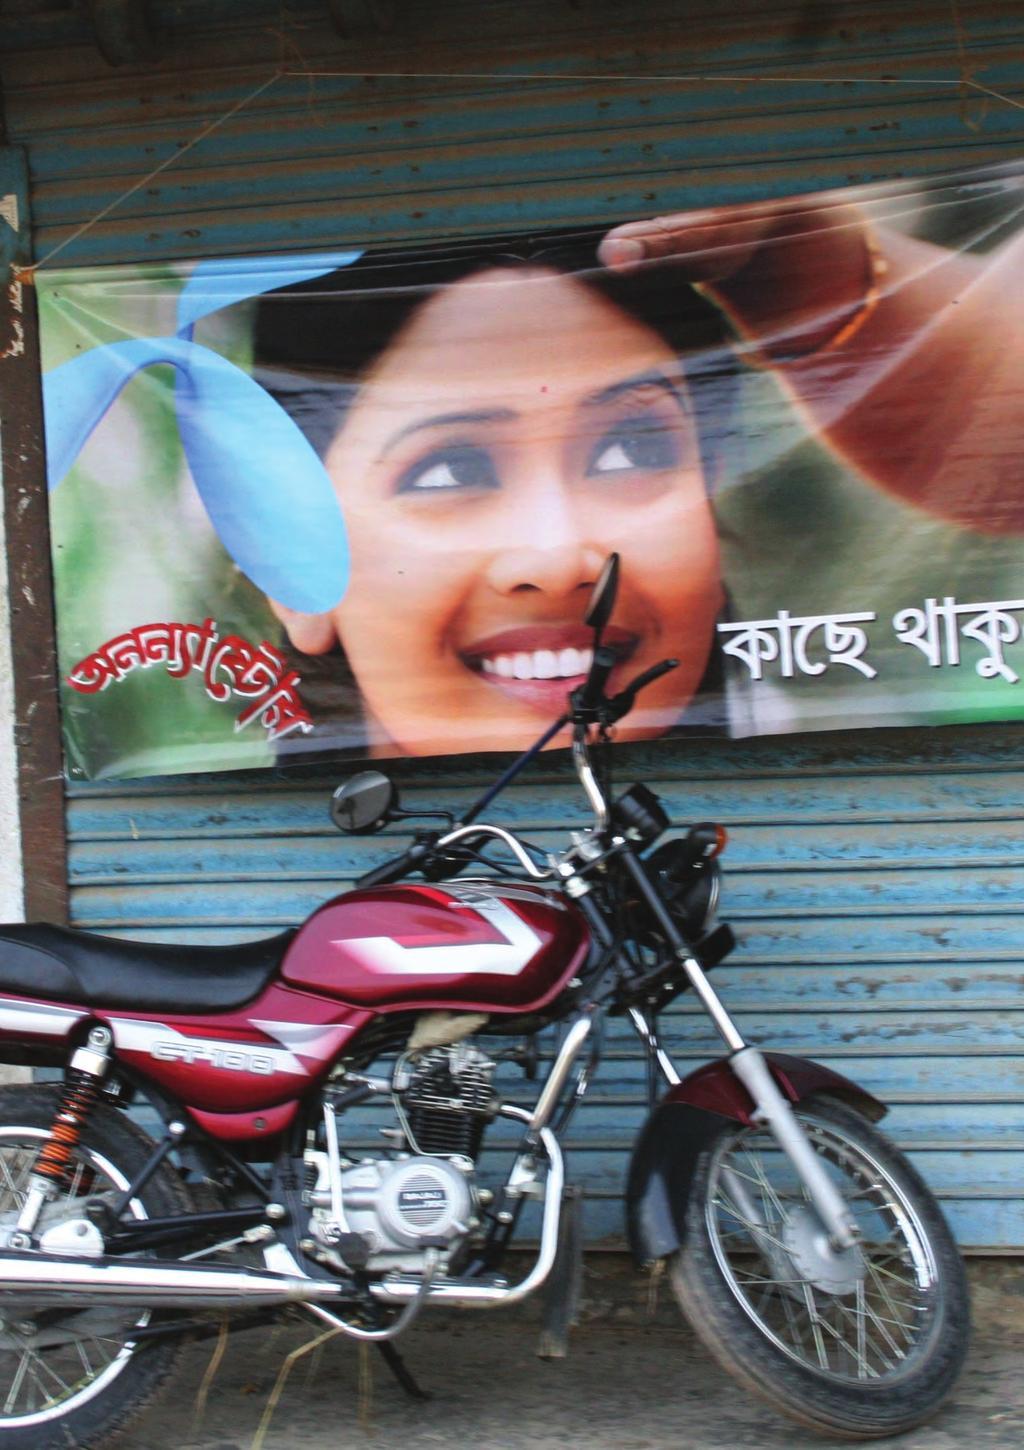 Bangladesh. Selskapet Grameen Phone, som hovedsakelig eies av Telenor, driver massiv markedsføring i Bangladesh. Her er et banner med reklame for Grameen Phone i Kurigram.